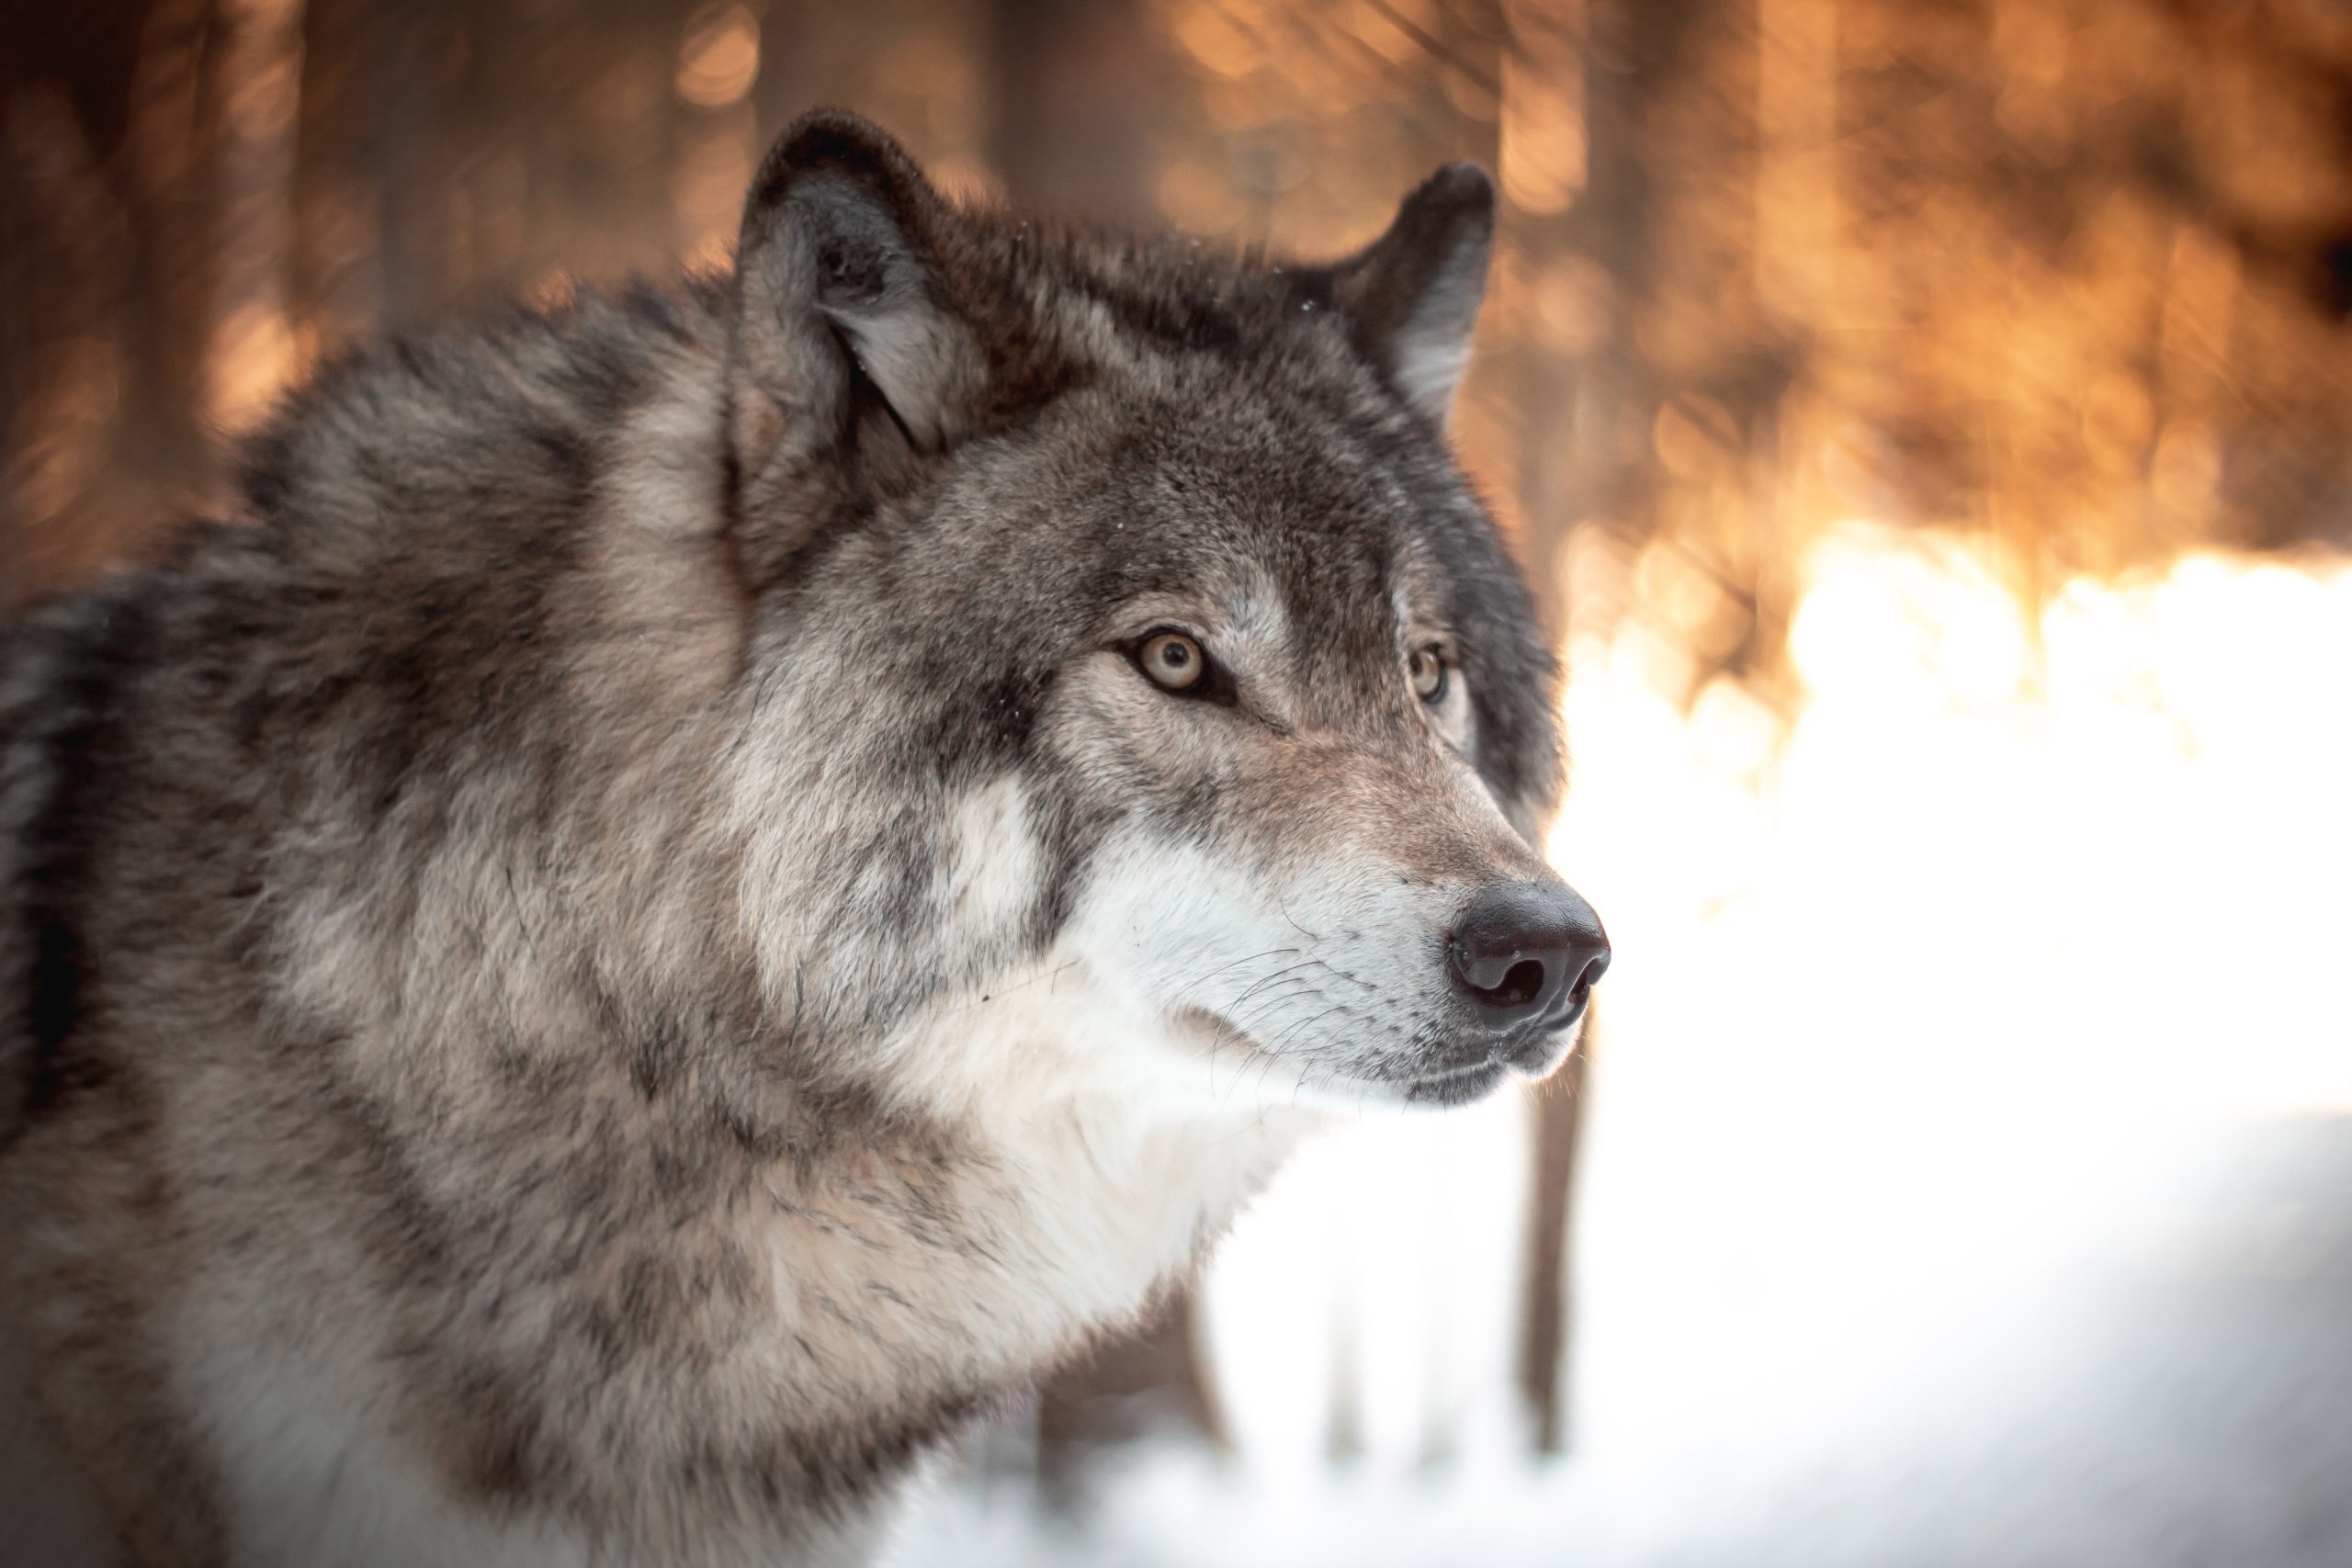  Soñar con un lobo: Un sueño con lobos puede REVELAR algo aterrador sobre ti